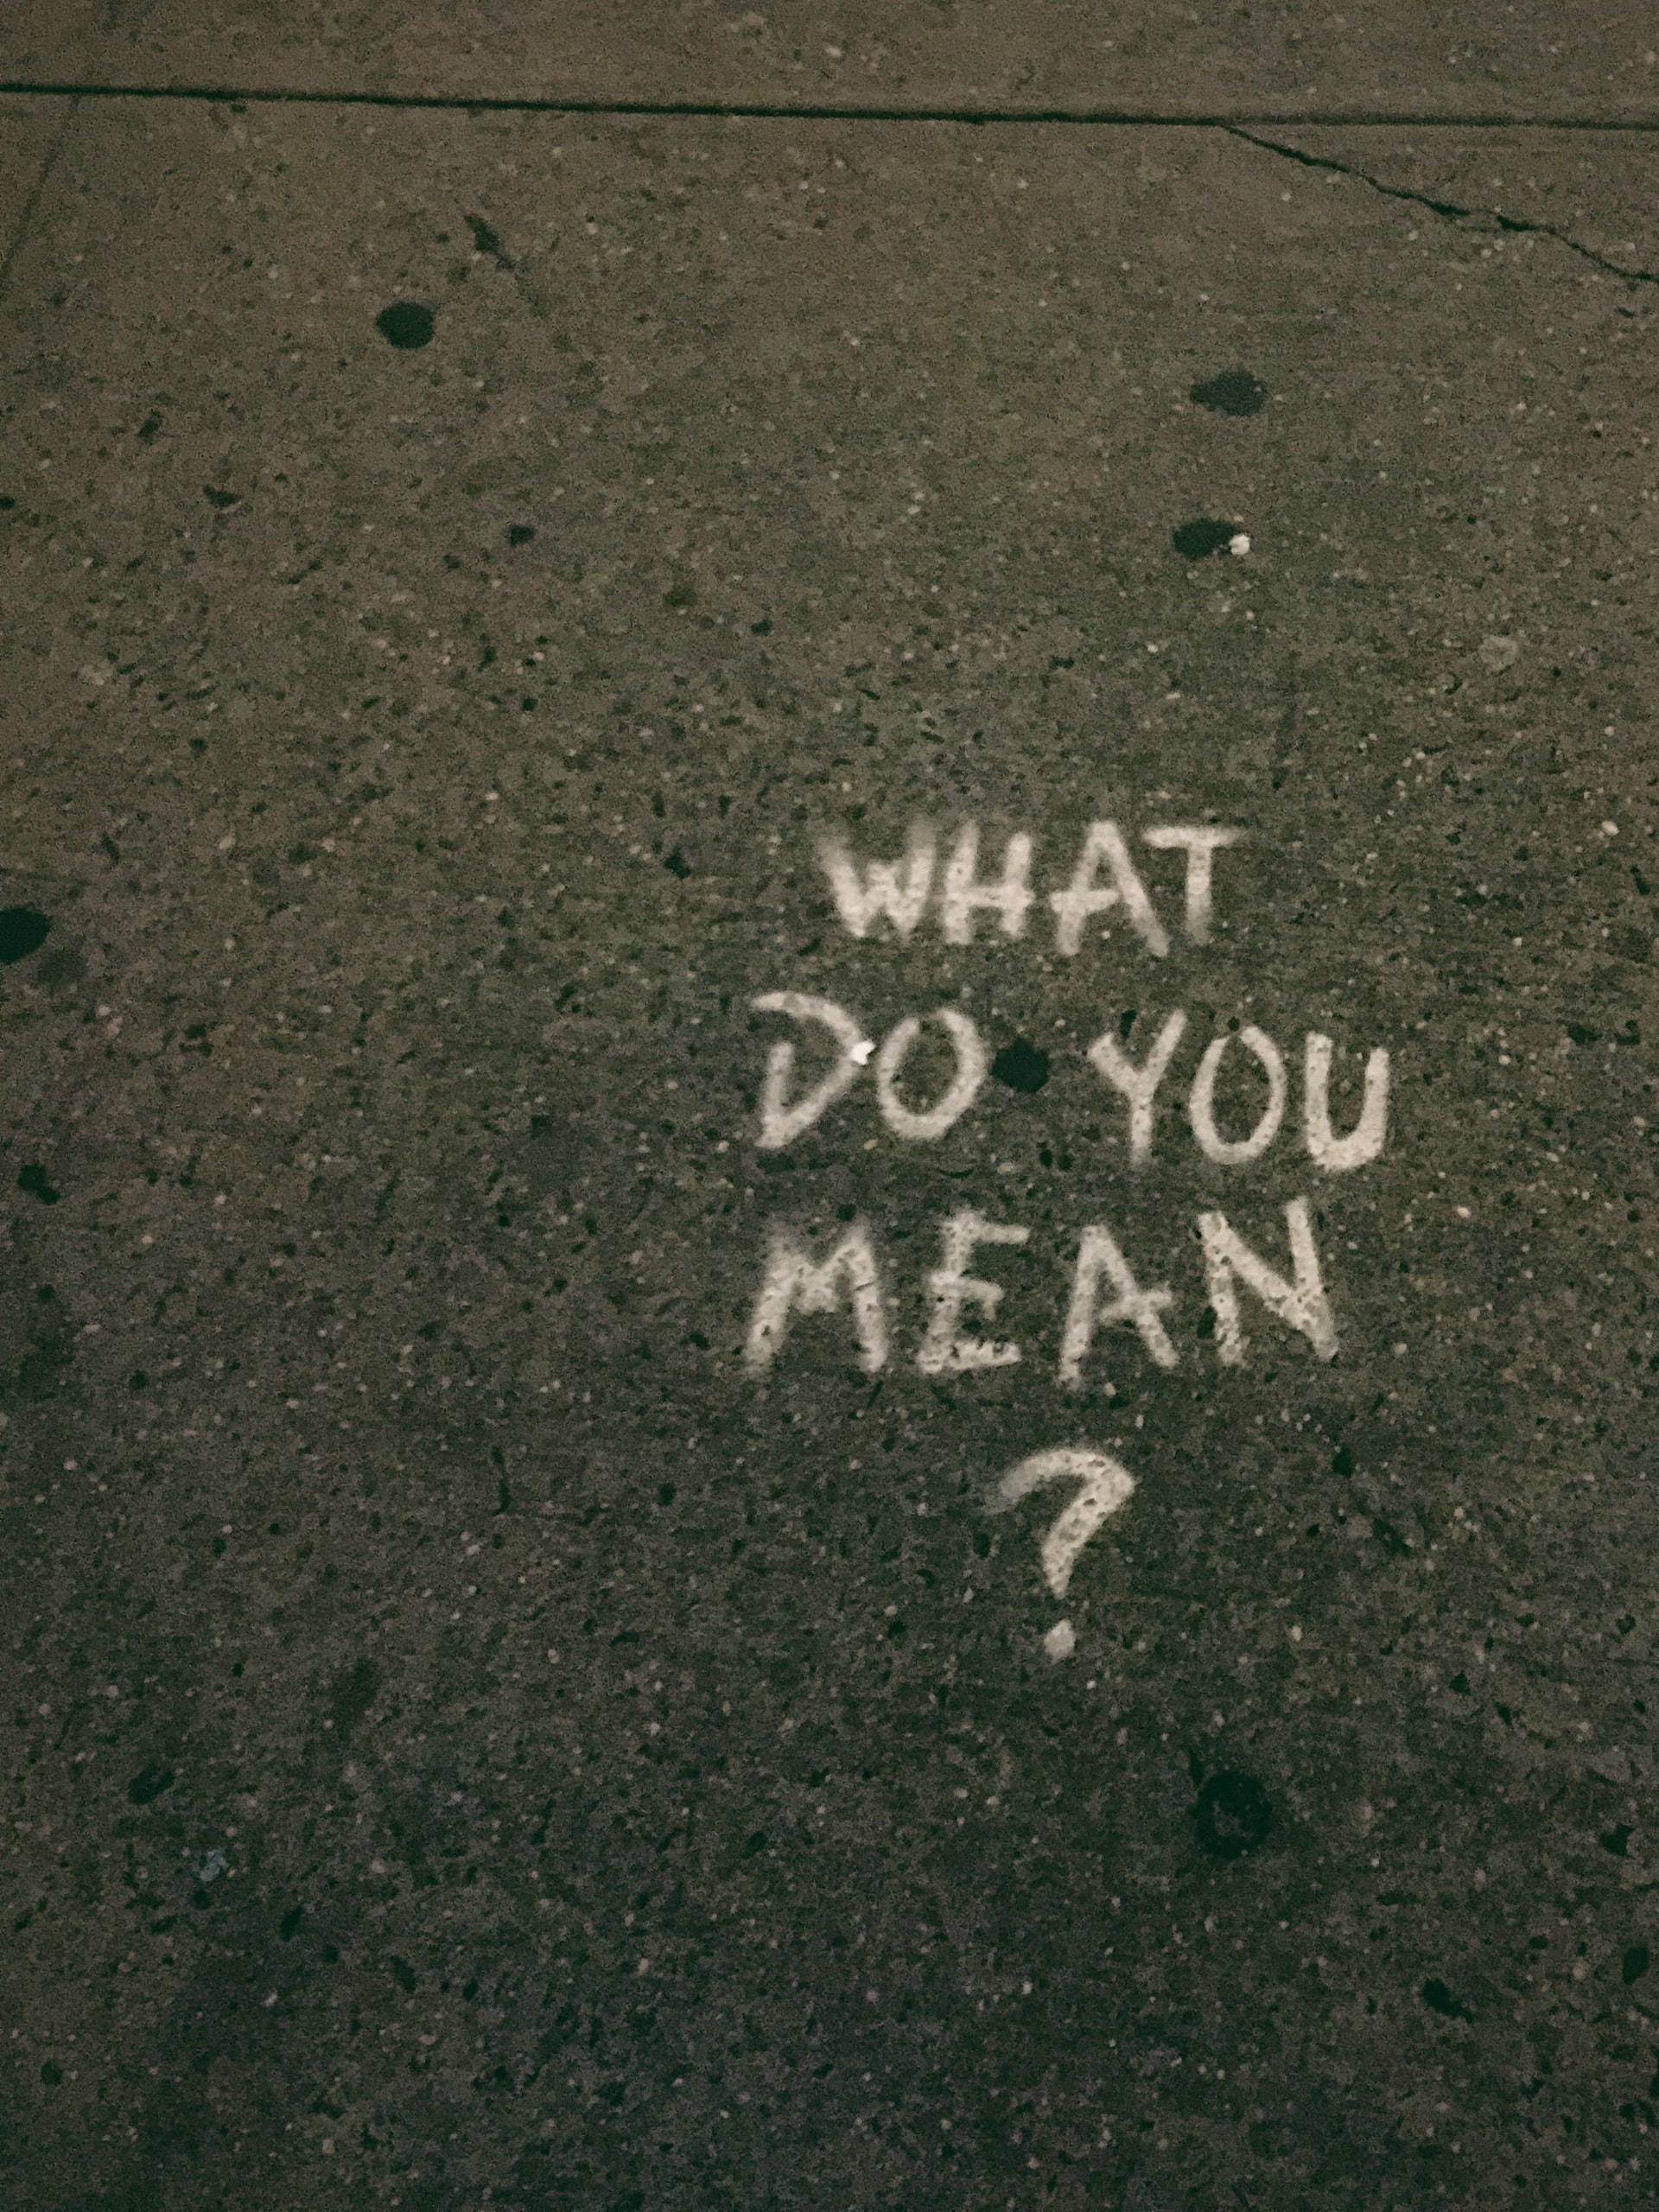 Les mots « Que voulez-vous dire ? » écrit à la craie sur le trottoir.